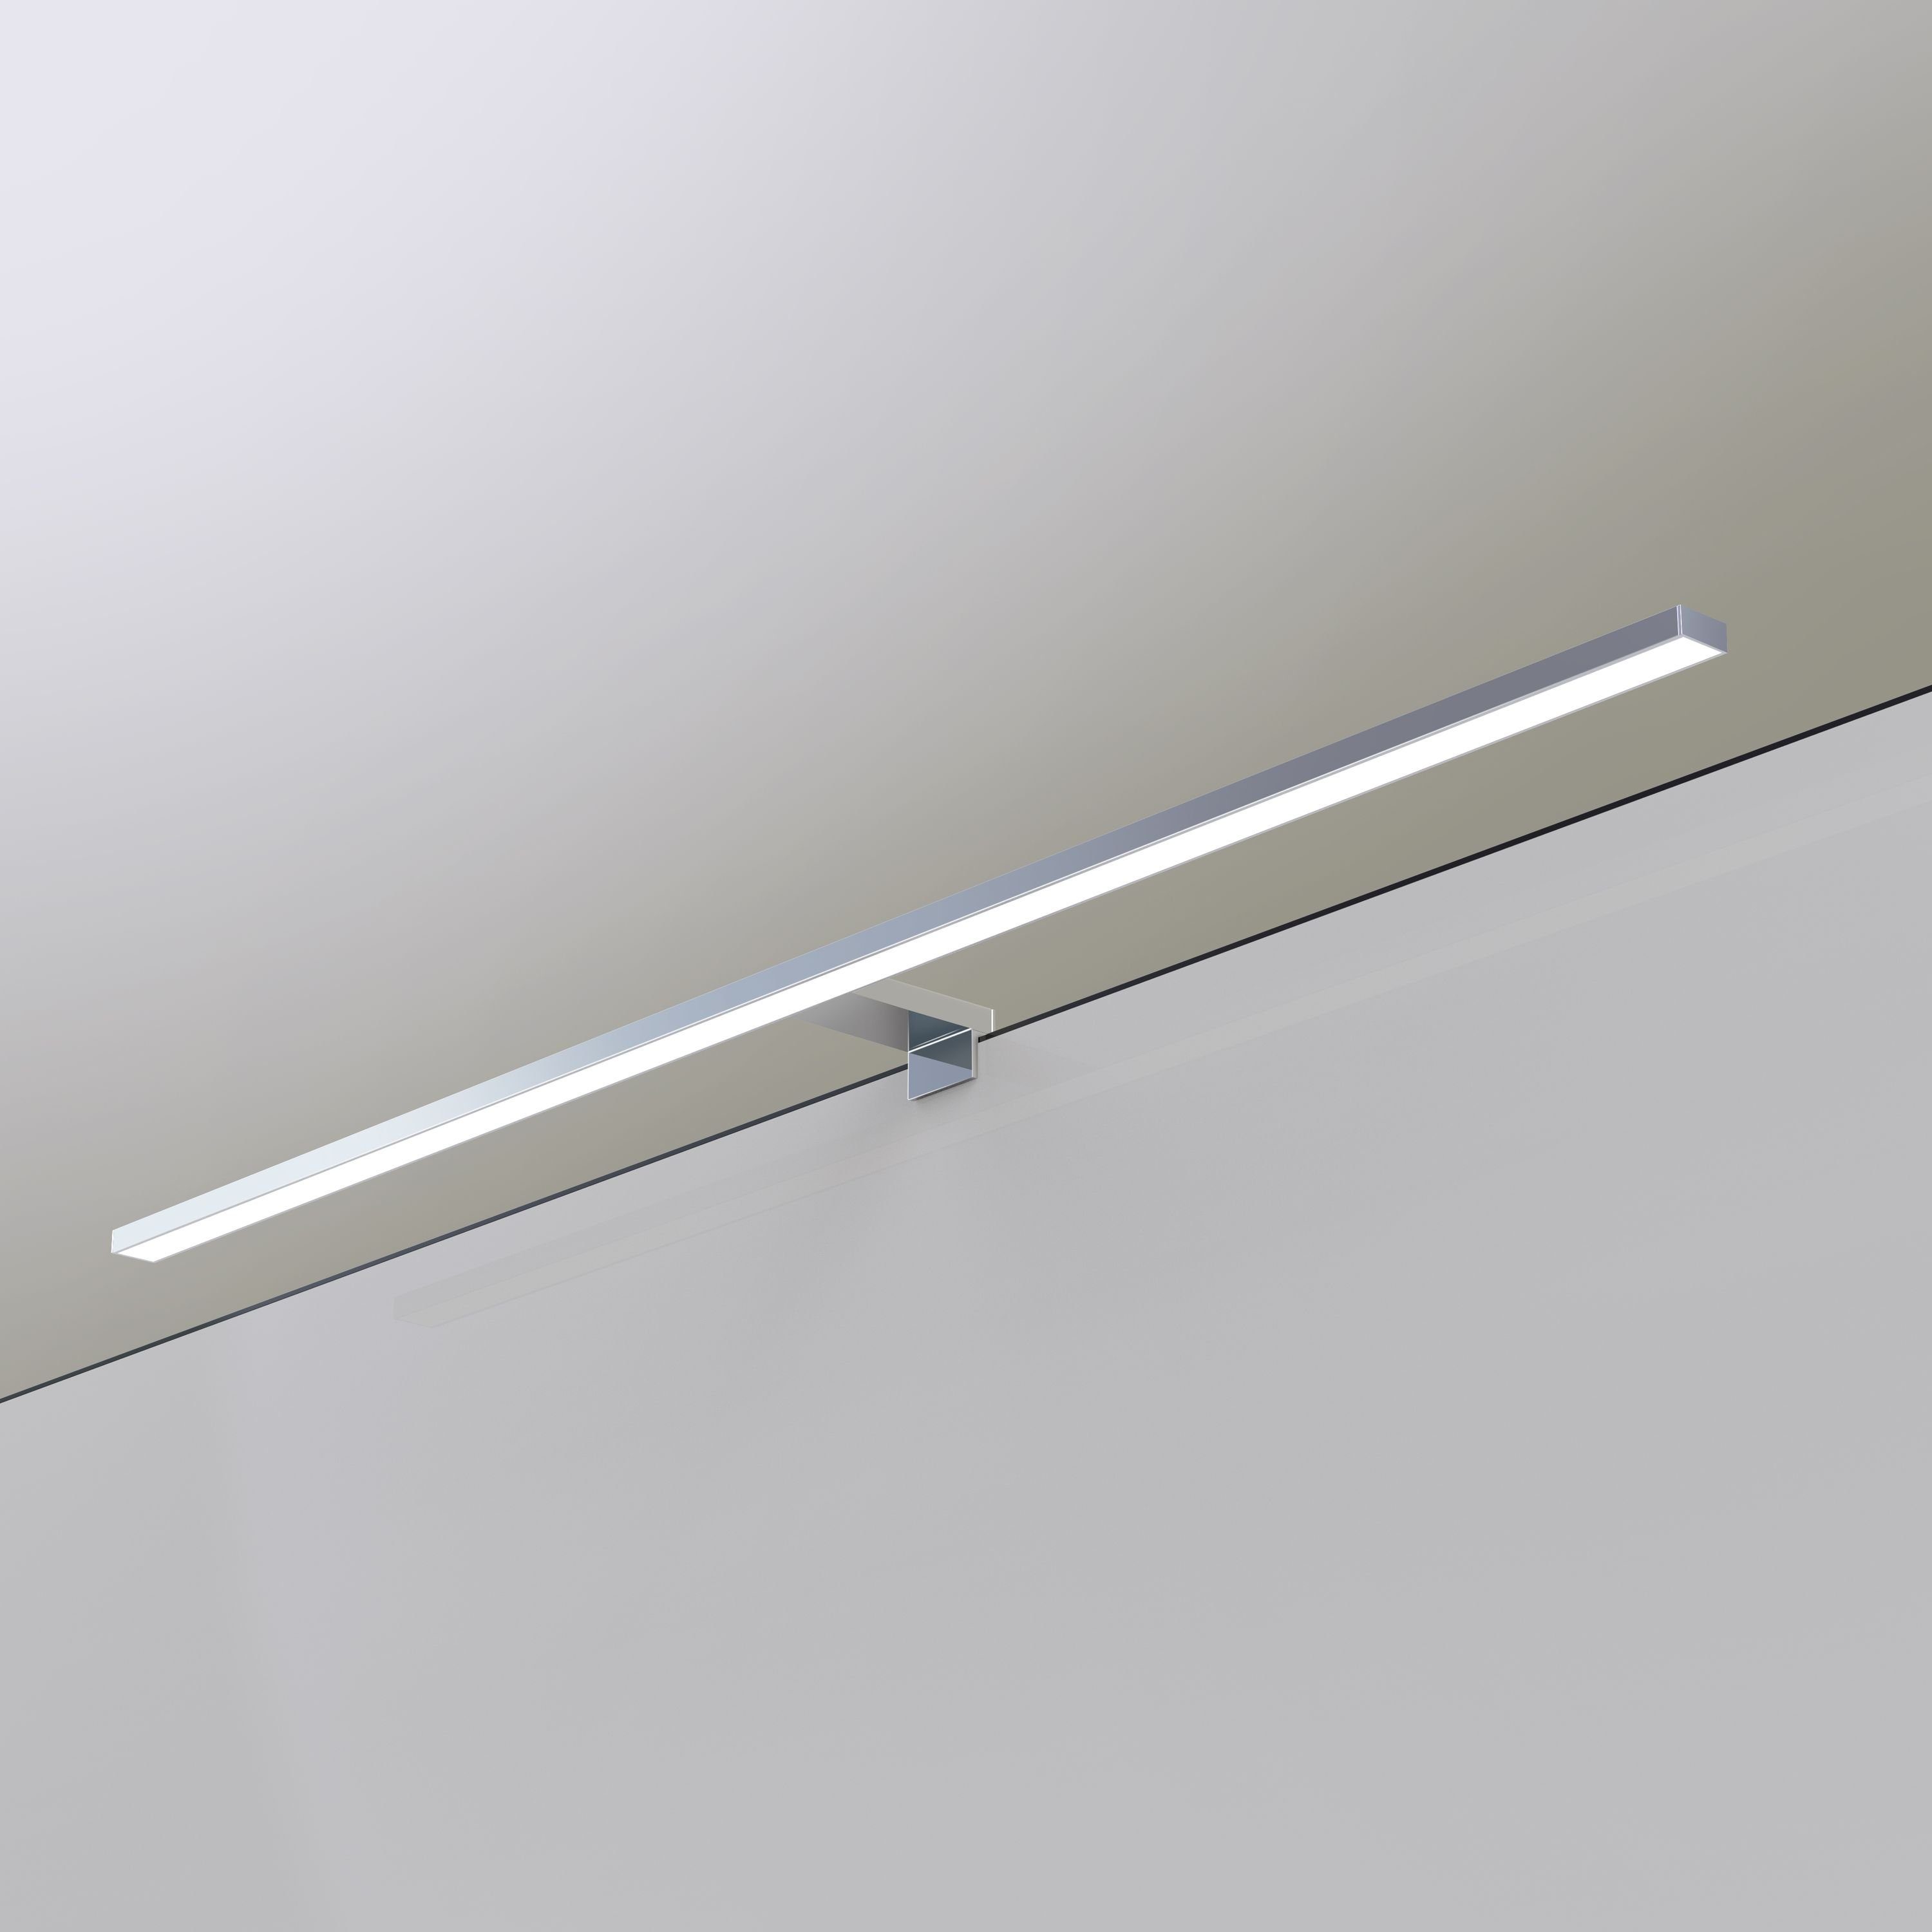 LED Badlampe neutralweiß Badleuchte Spiegelleuchte 100cm 230V, verchromt, Spiegellampe kalb